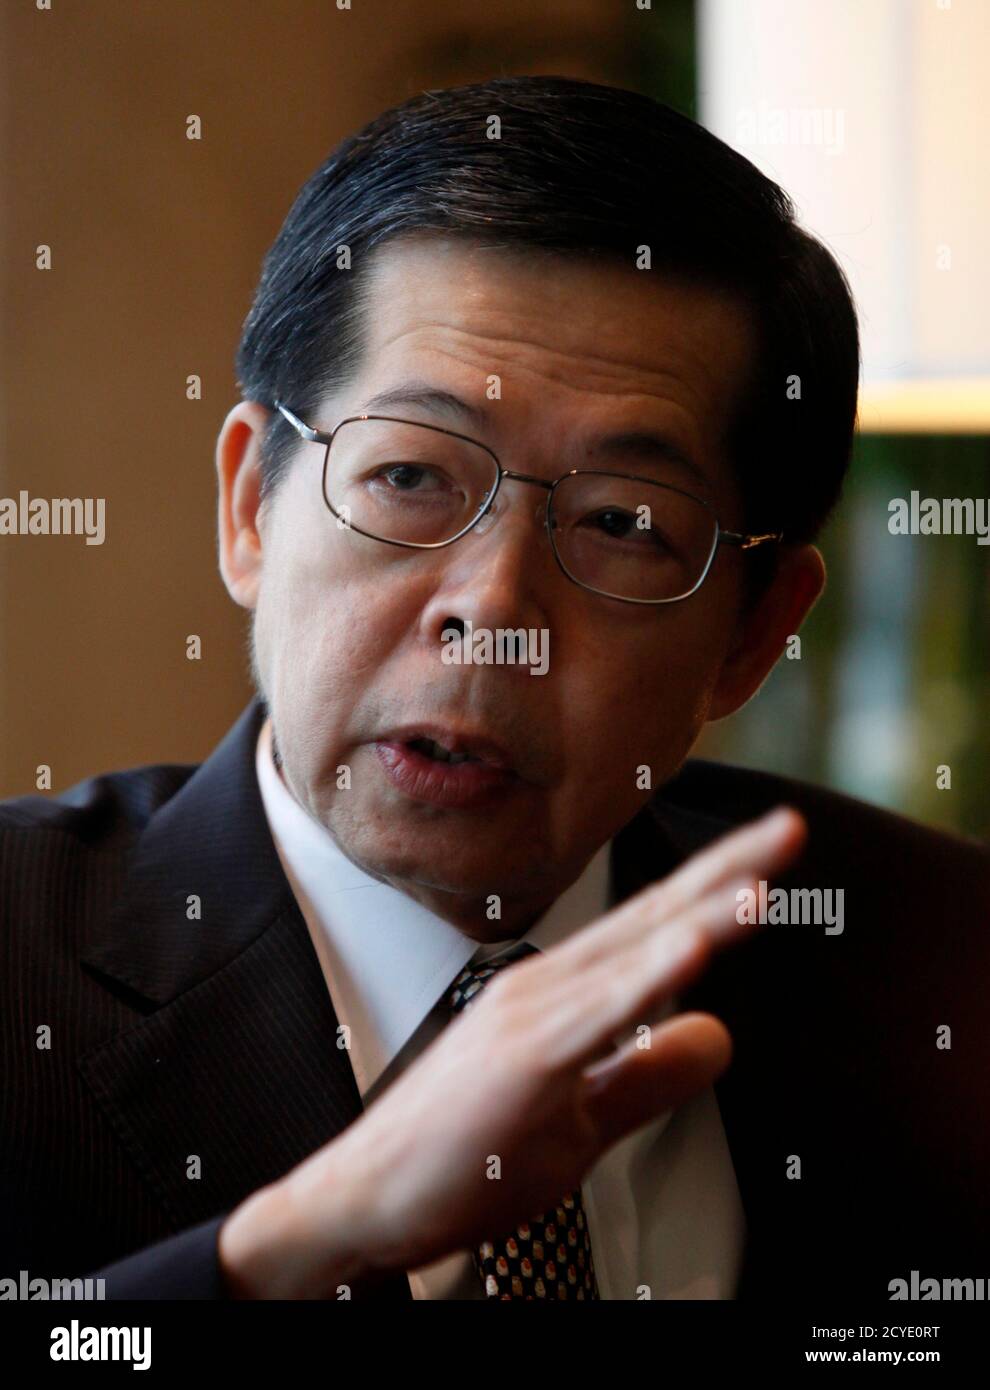 El gobernador del Banco Central de Tailandia, Prasarn Trairatvorakul, hace gestos durante una entrevista con Reuters en el Banco de Tailandia en Bangkok el 15 de febrero de 2012. El banco central de Tailandia se asegurará absolutamente de que su nueva responsabilidad de atender a una enorme montaña de deuda de 15 años que se remonta a la crisis financiera asiática no interfiera con la política monetaria o monetaria, dijo su gobernador el miércoles. REUTERS/Chaiwat (TAILANDIA - Tags: BUSINESS HEADSHOT) Foto de stock